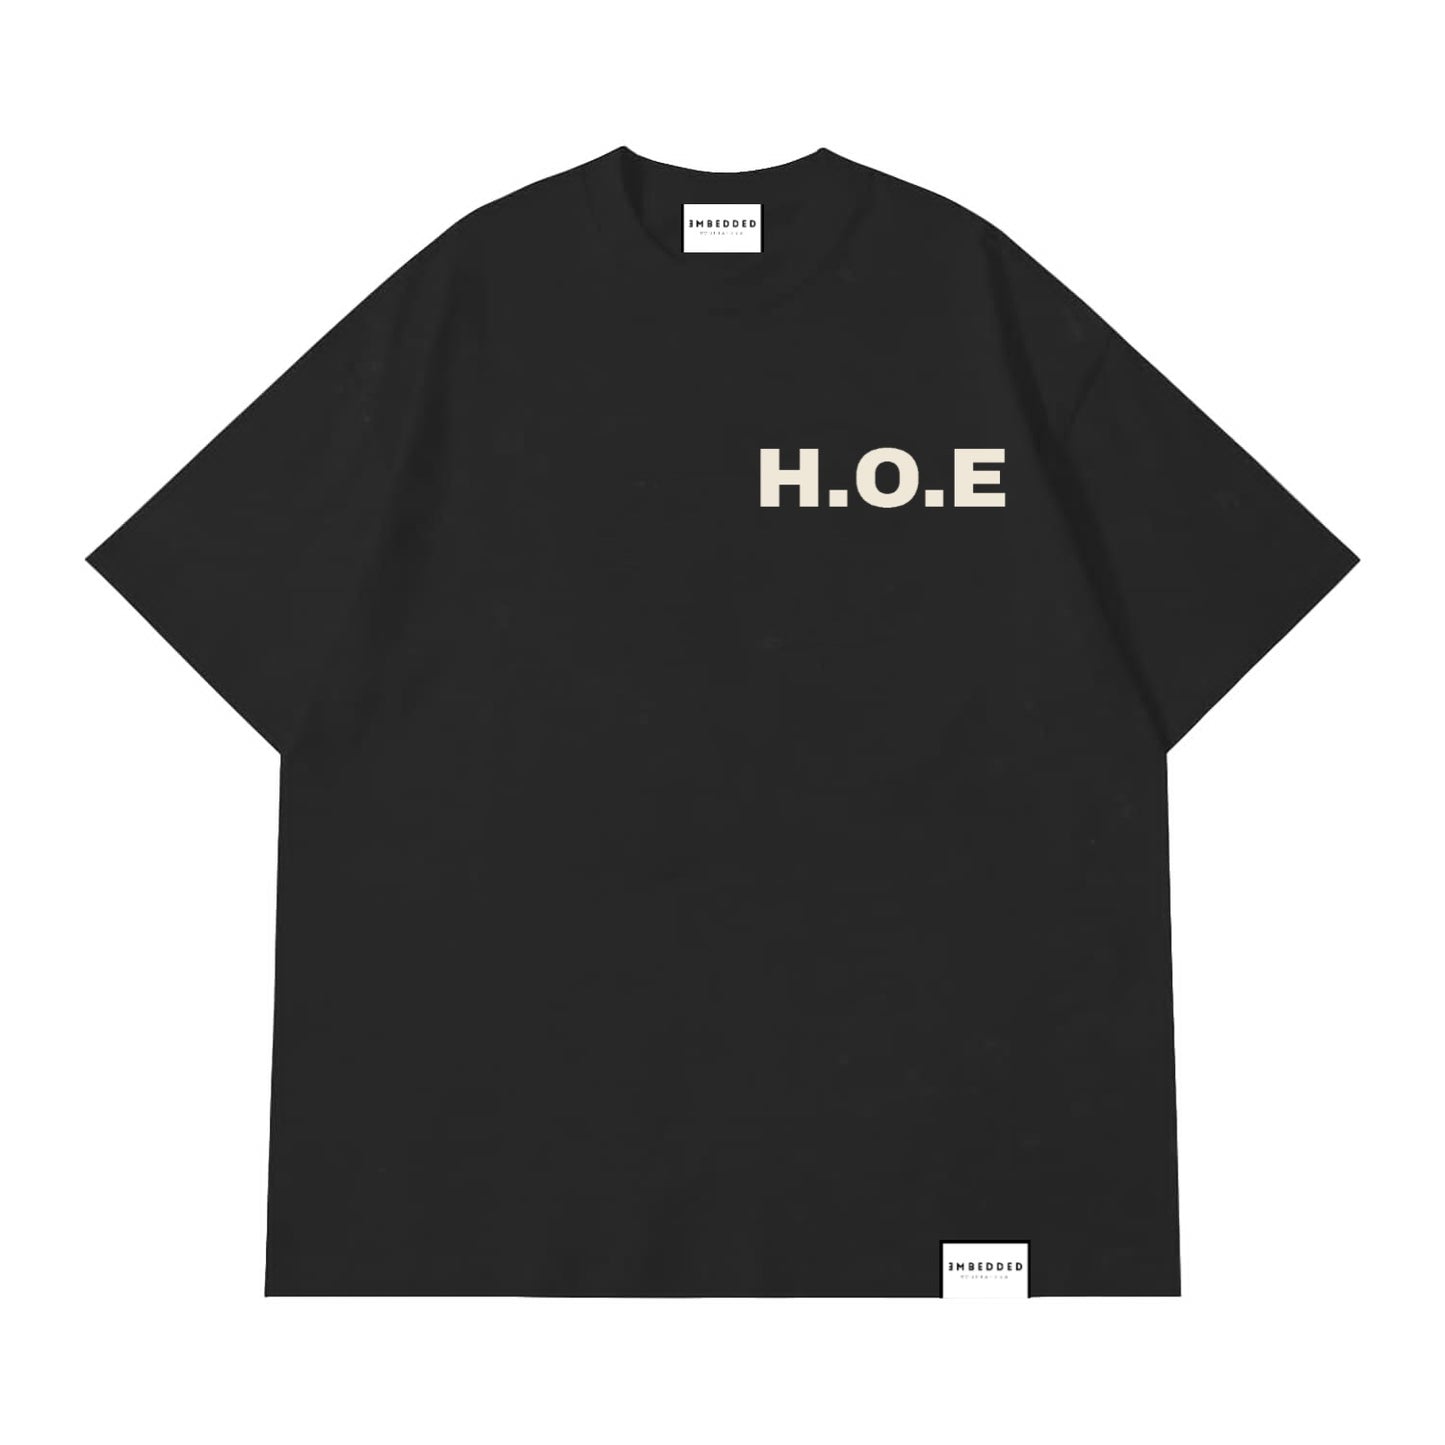 H.O.E - Off Black (Grey)